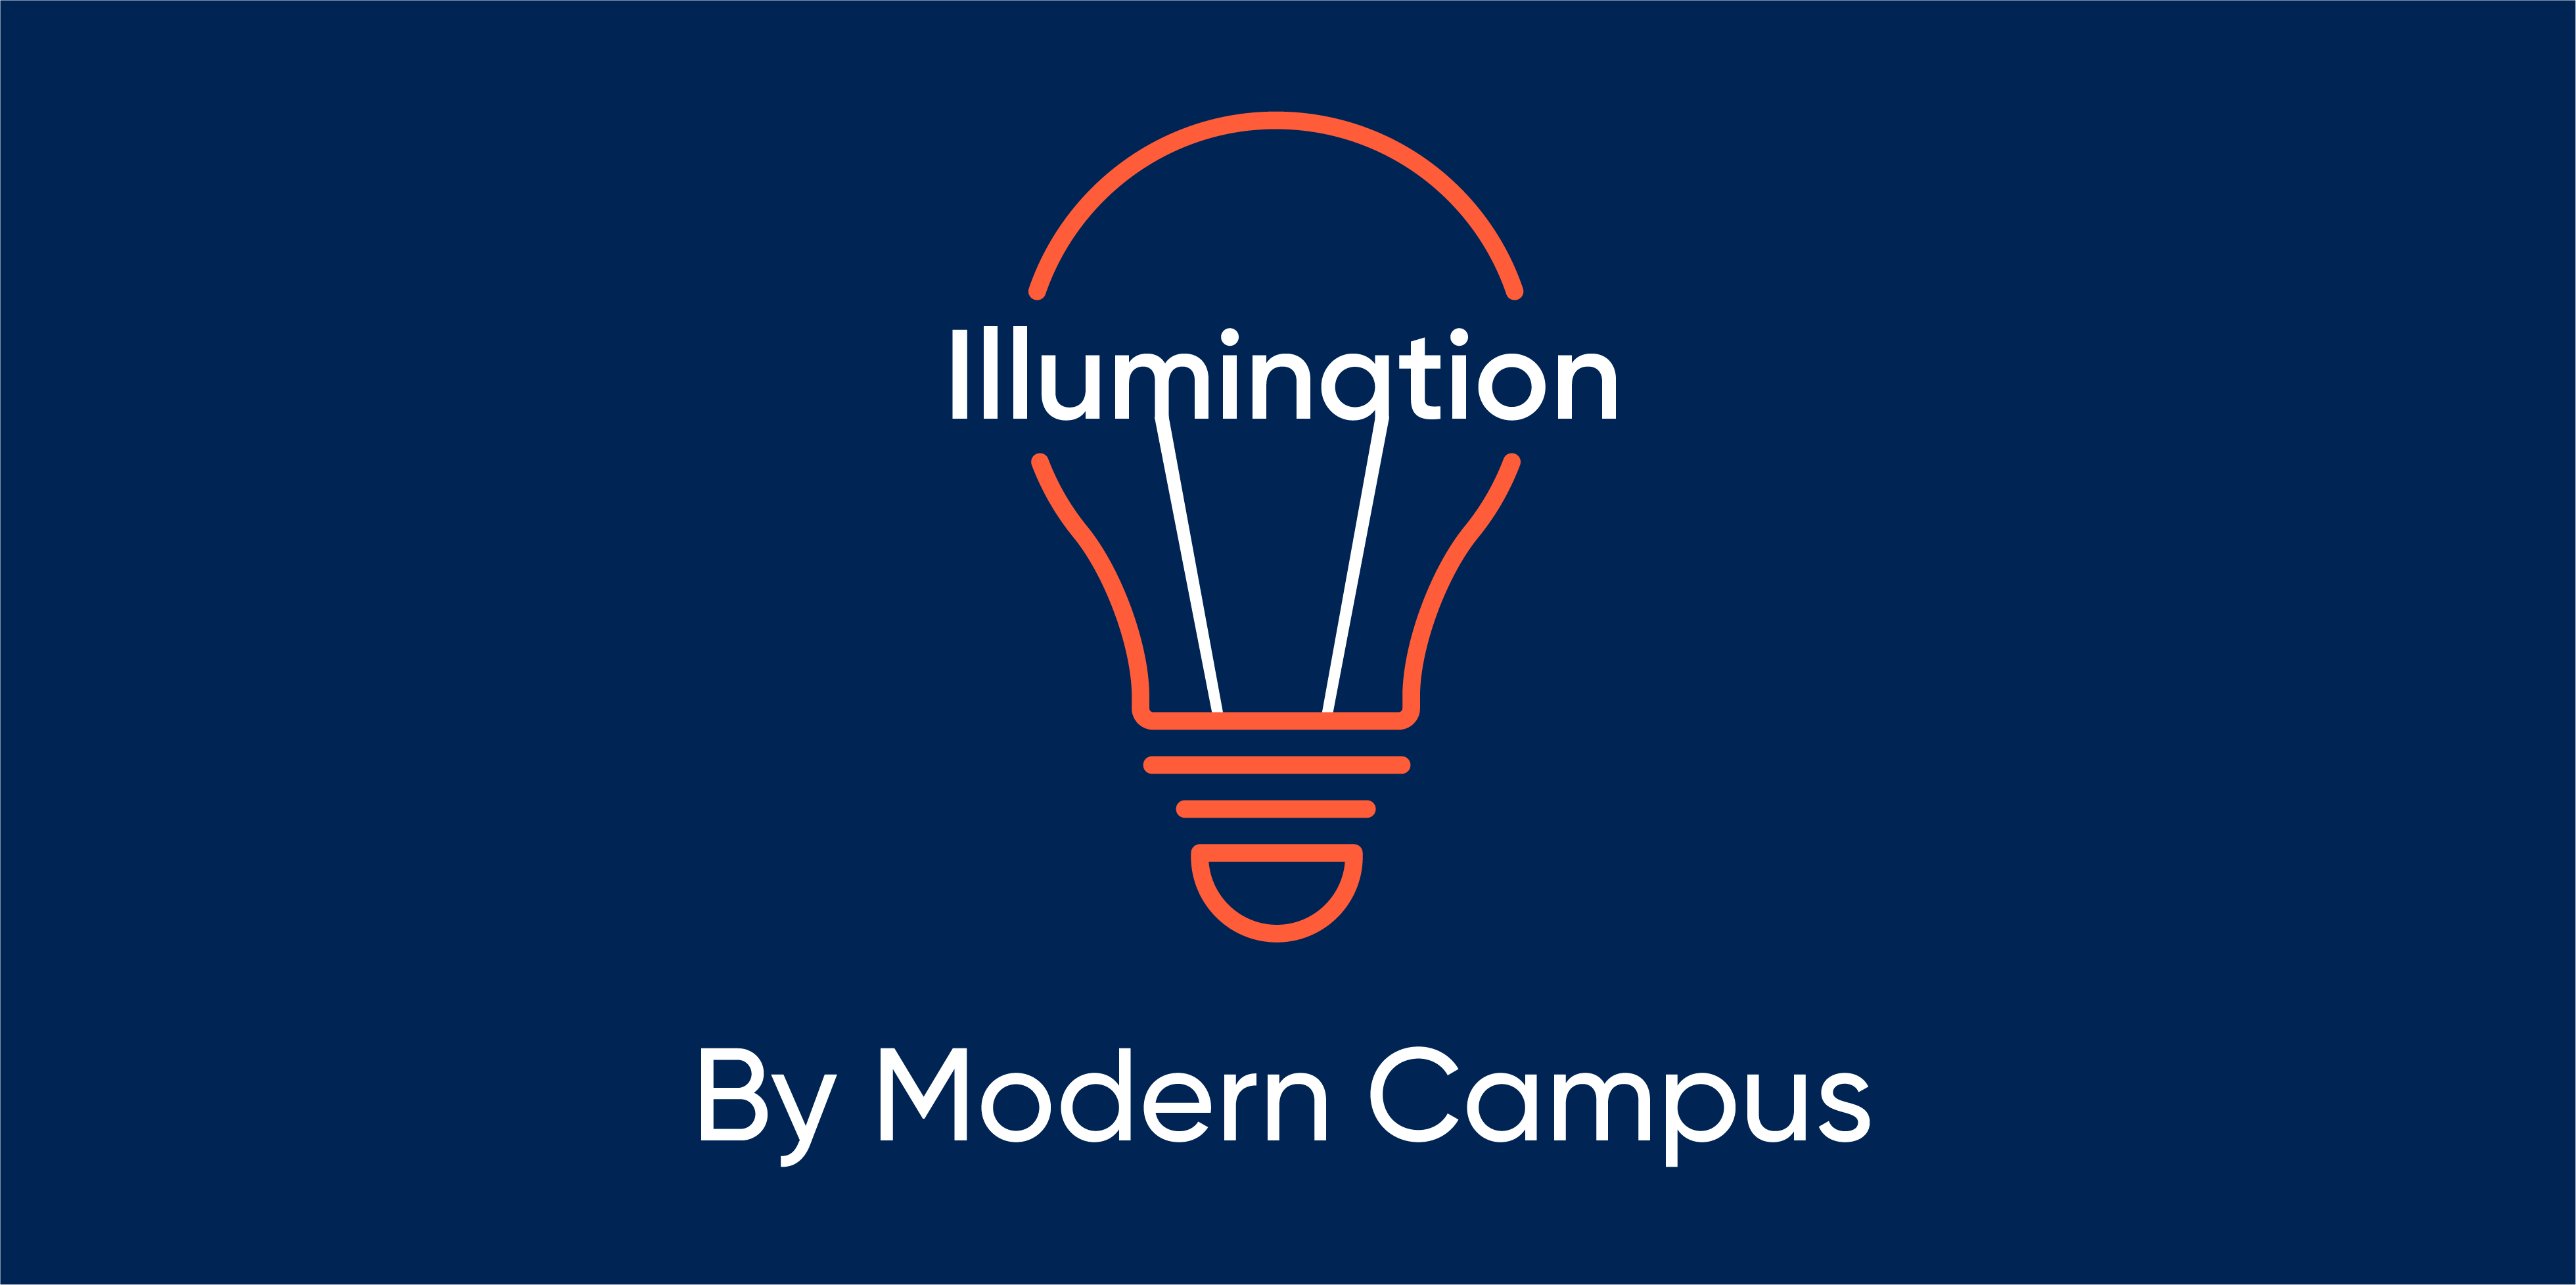 Episode 143: Illumination by Modern Campus